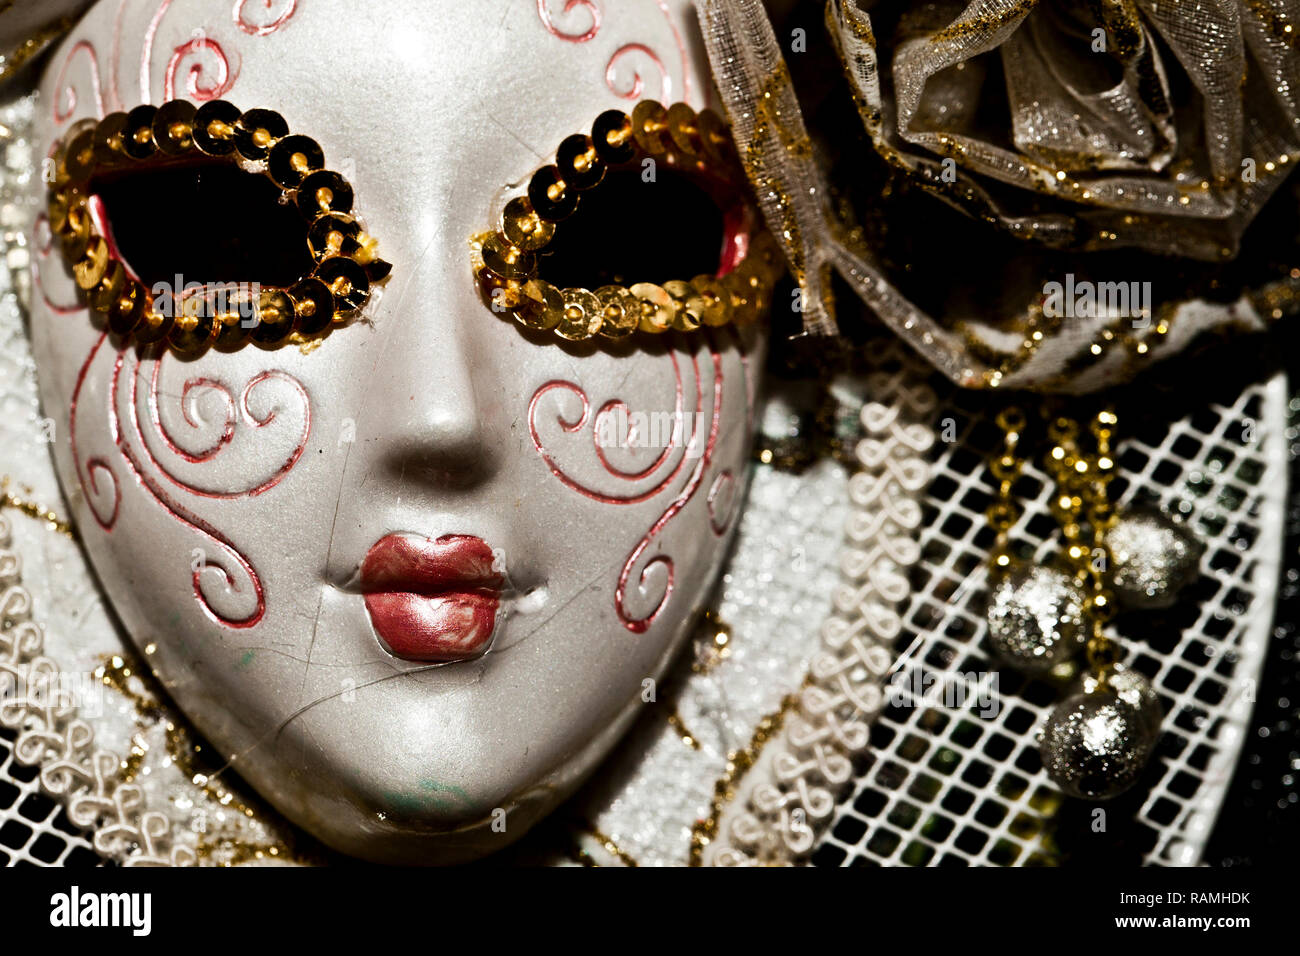 Colorida máscara de carnaval veneciano